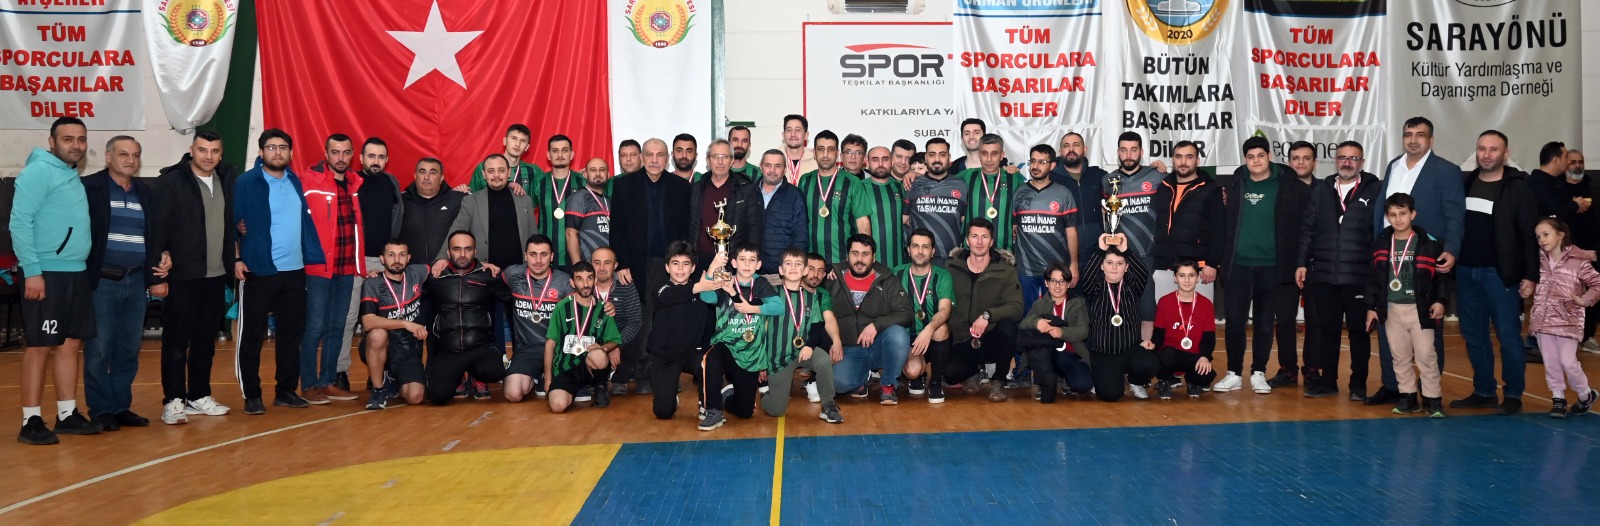 Sarayönü Belediyesi turnuvanın şampiyonu oldu